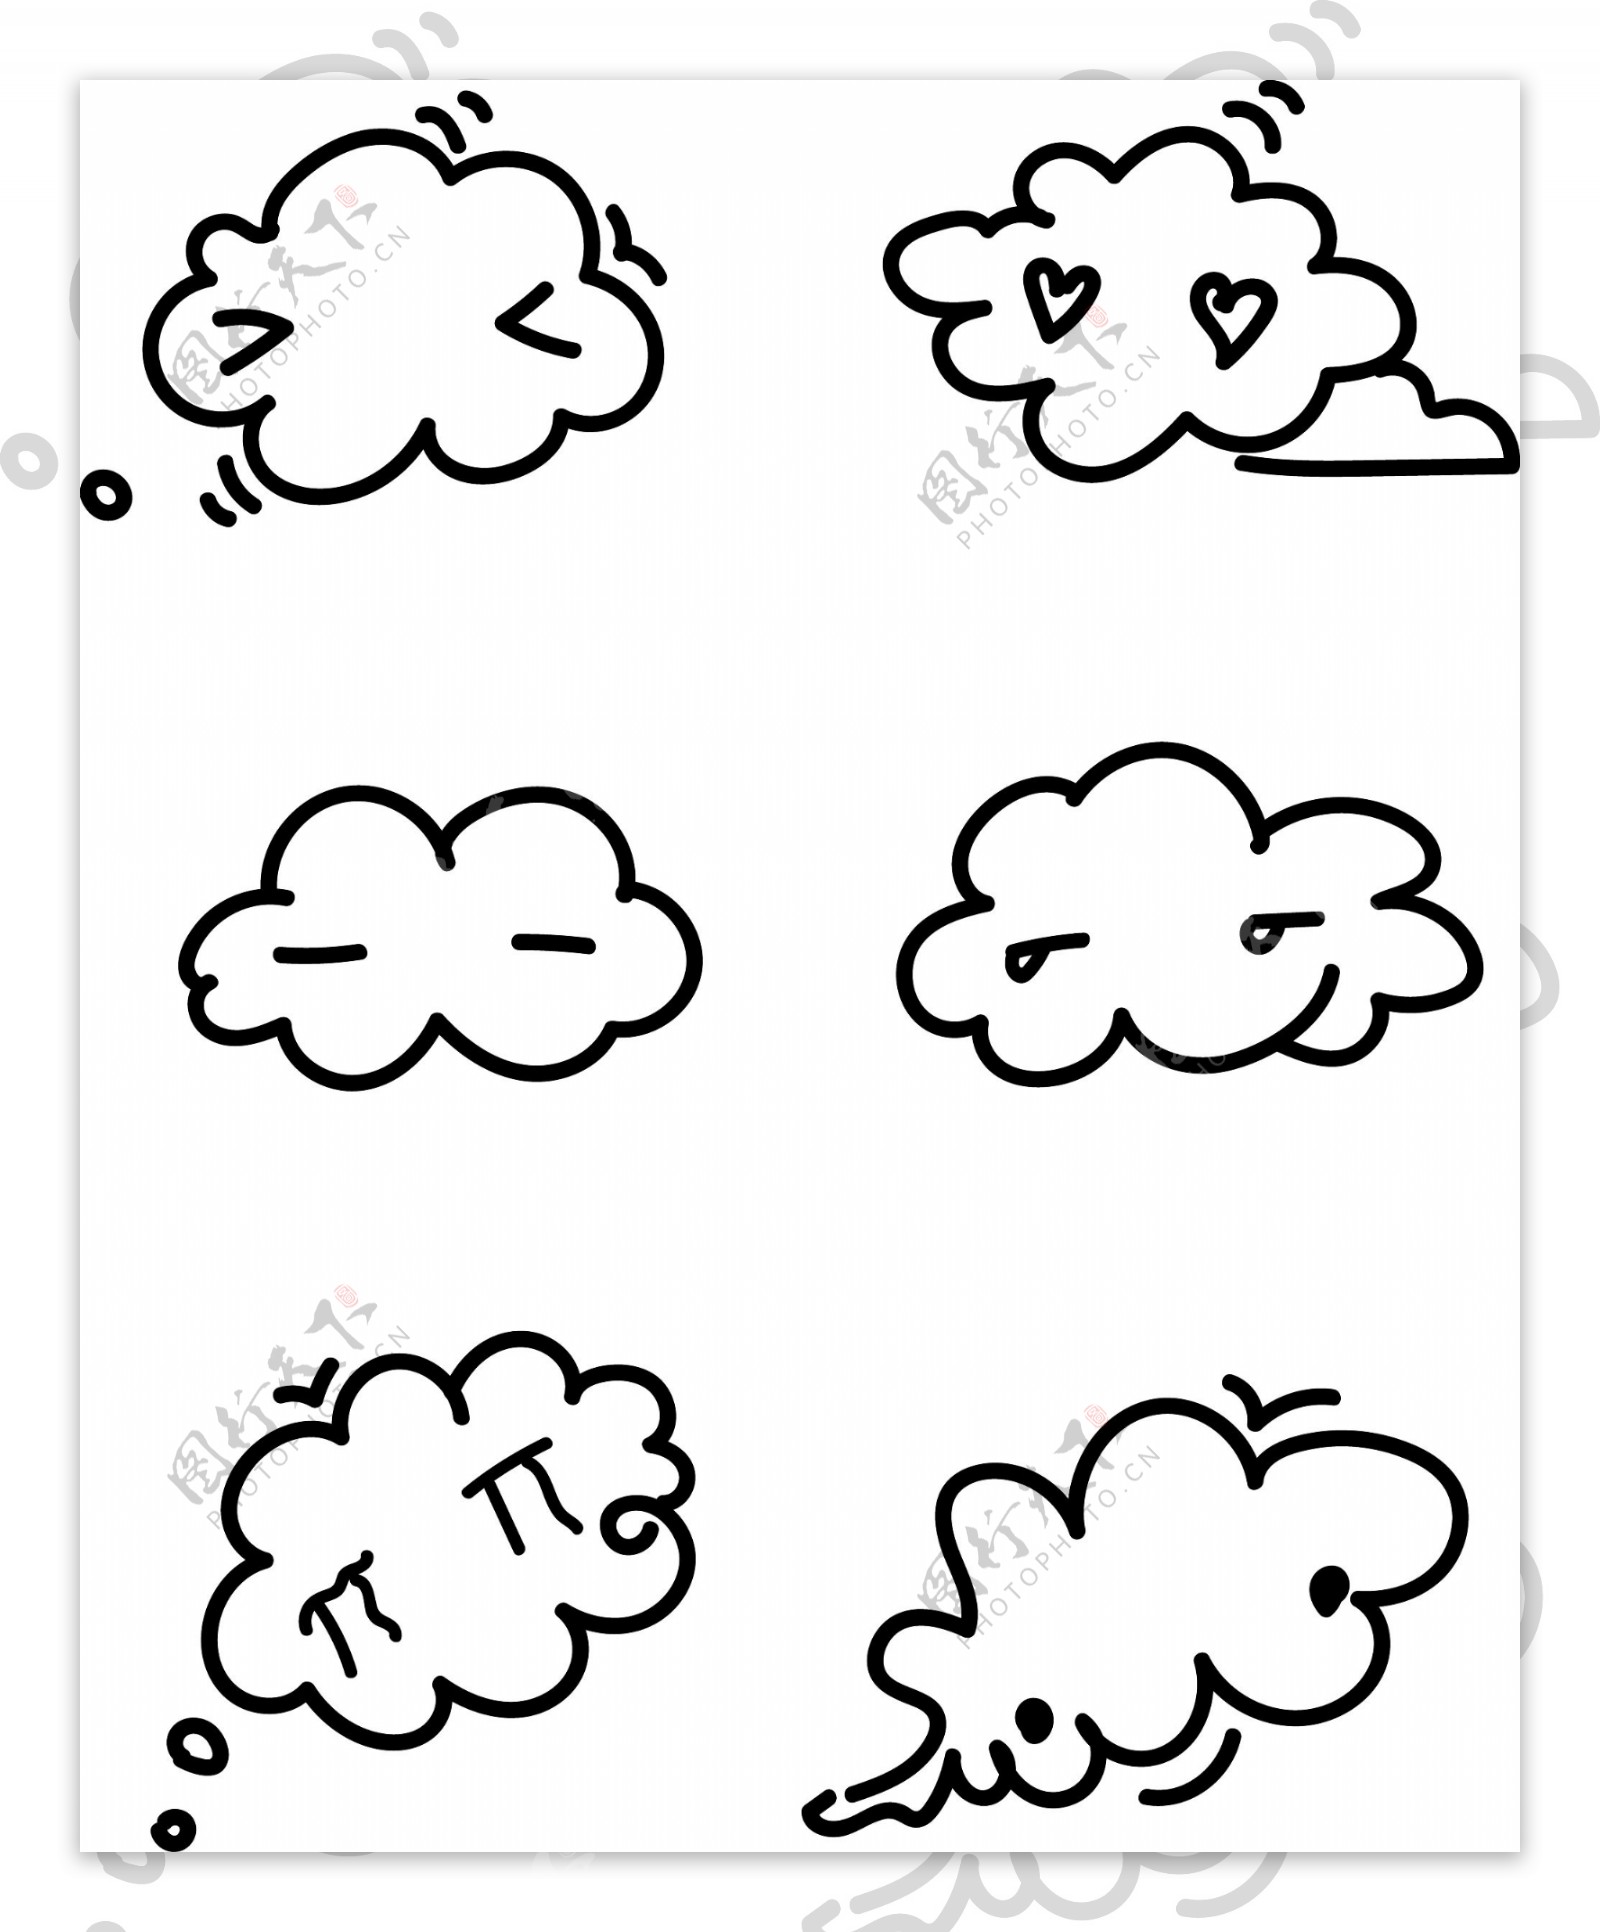 简笔黑白卡通矢量白云可爱表情可商用元素